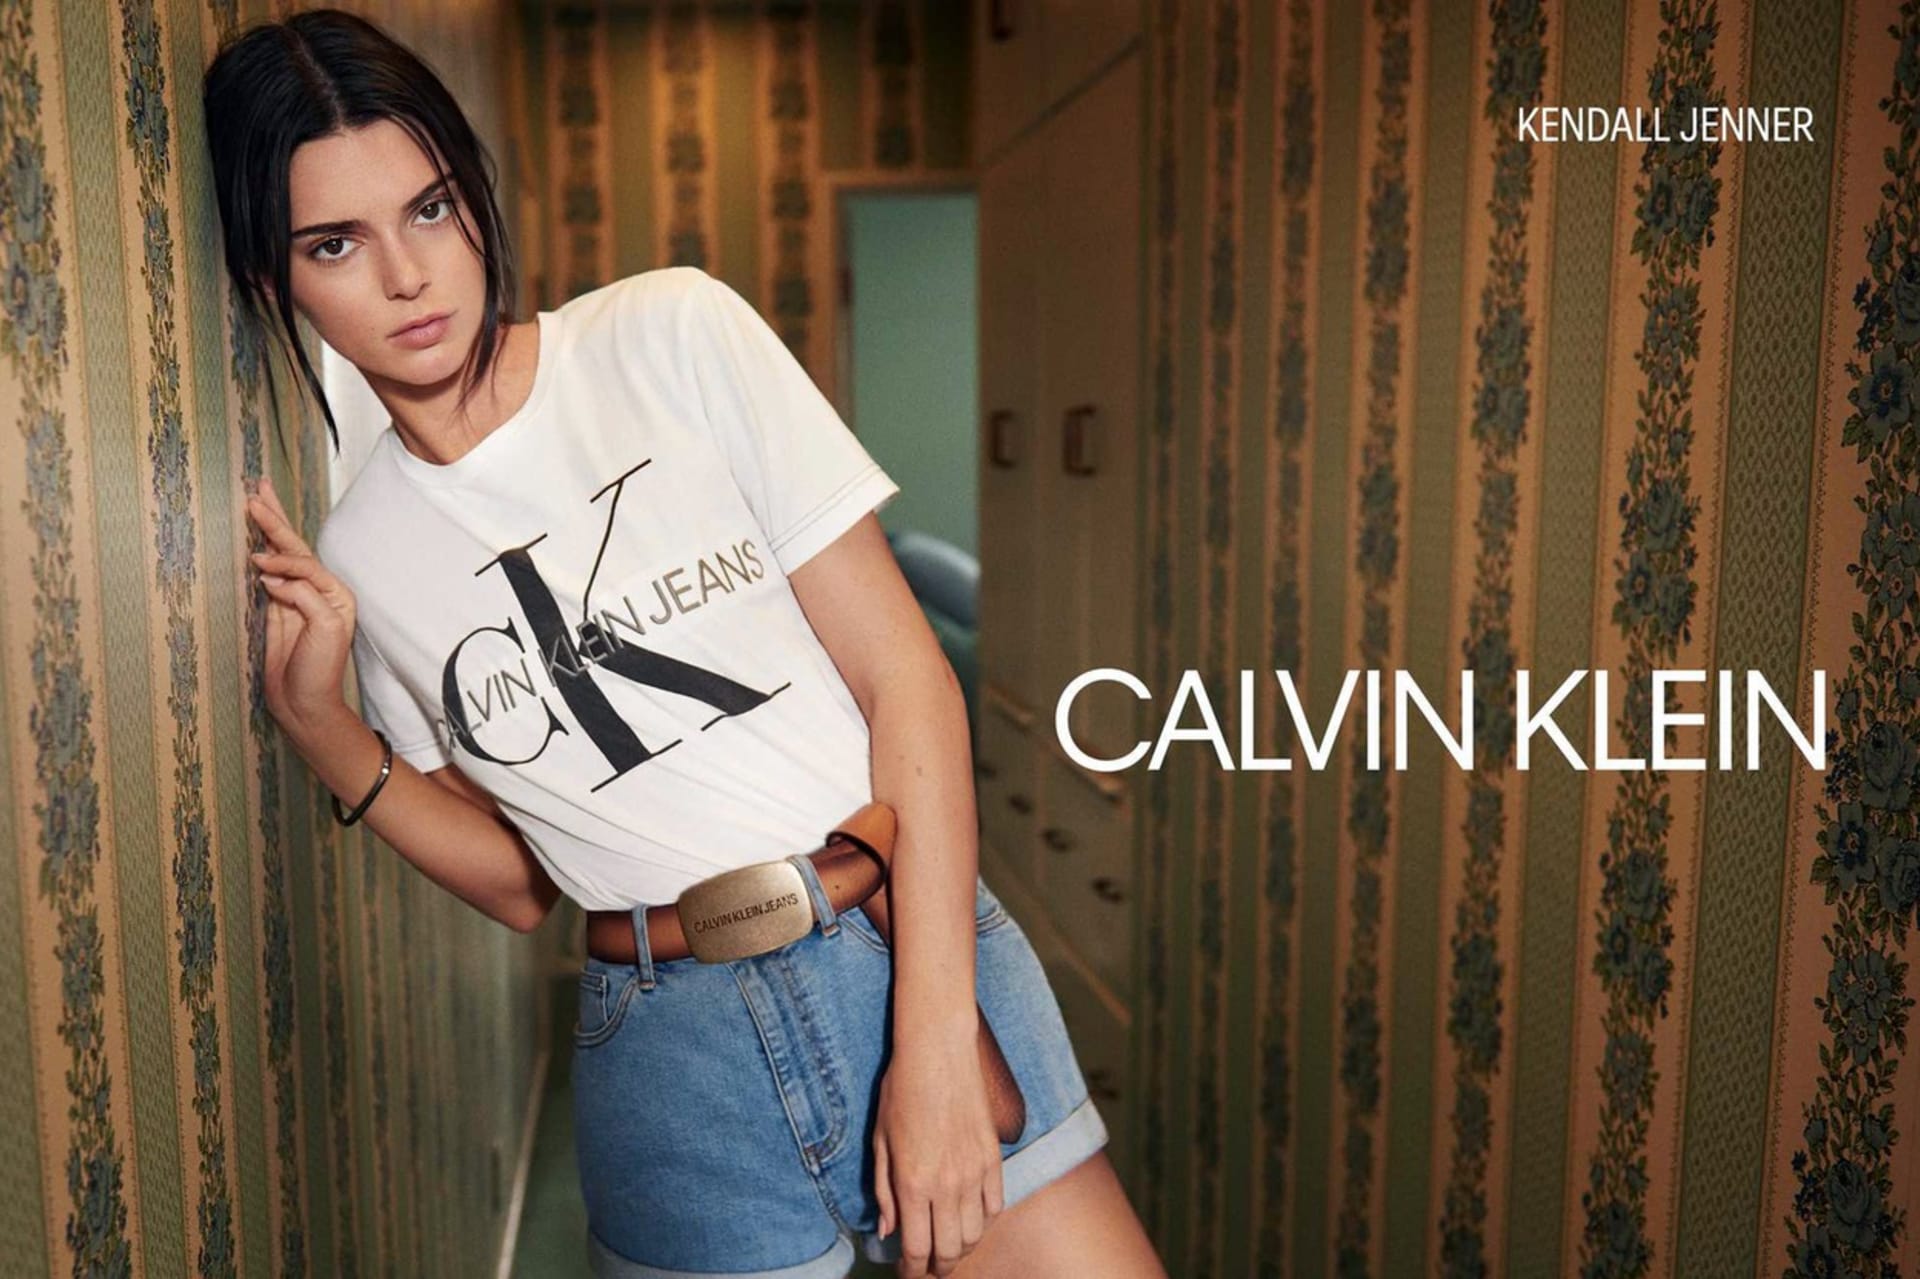 Kendall Jenner v kampani na spodní prádlo Calvin Klein (2019)